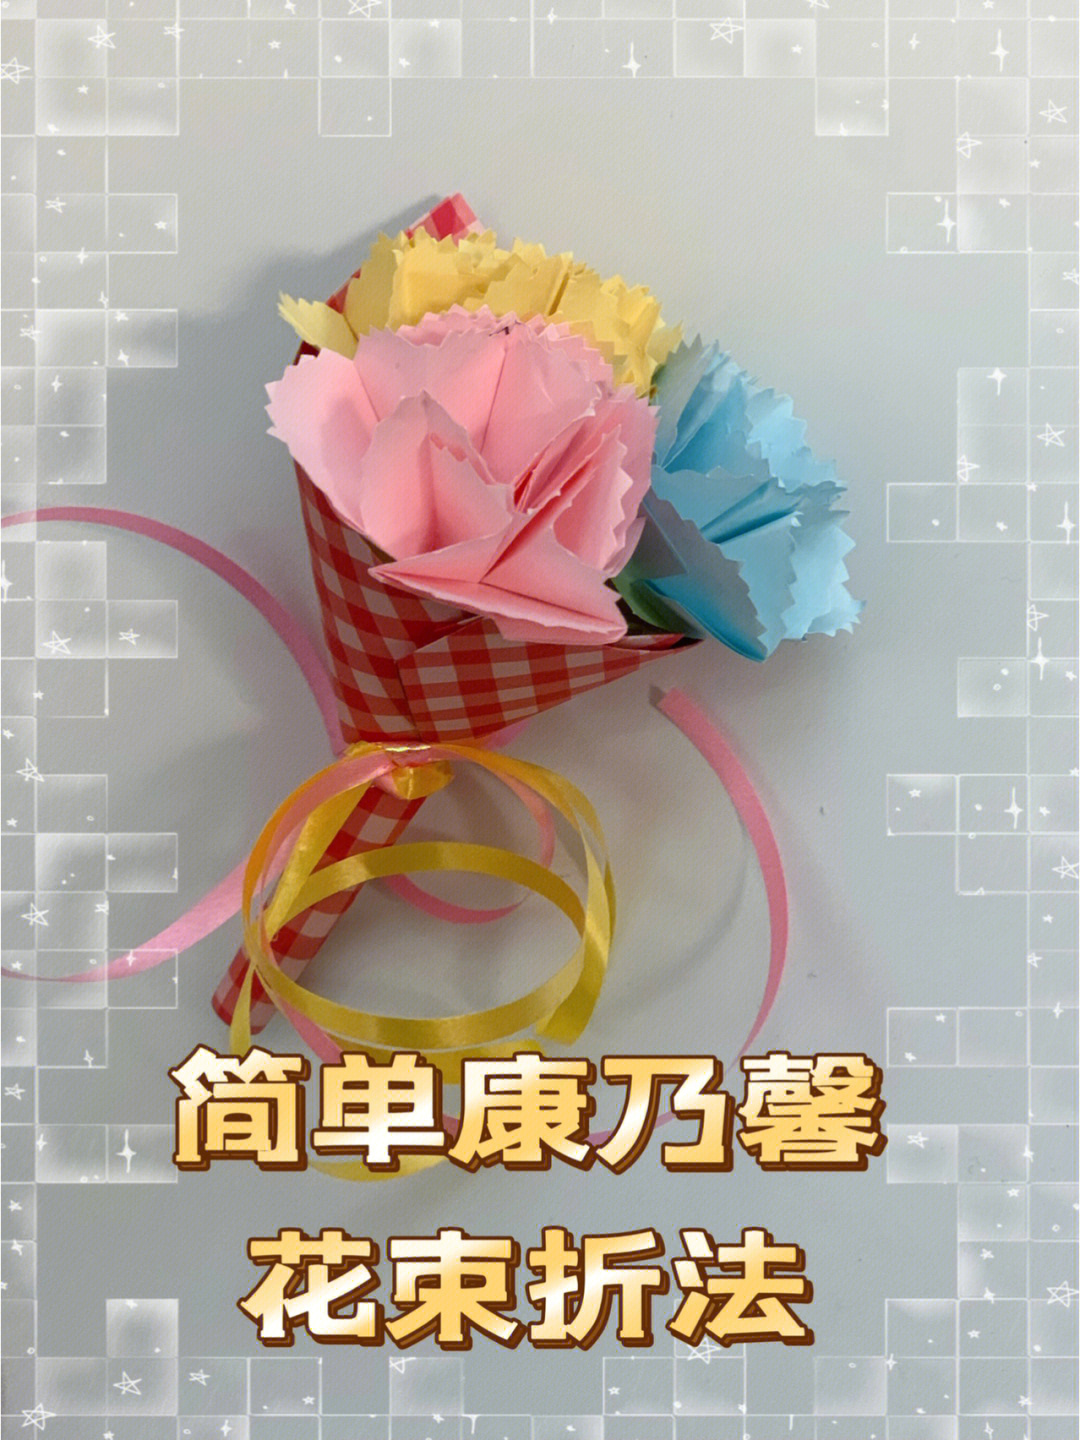 康乃馨花折纸教程图片